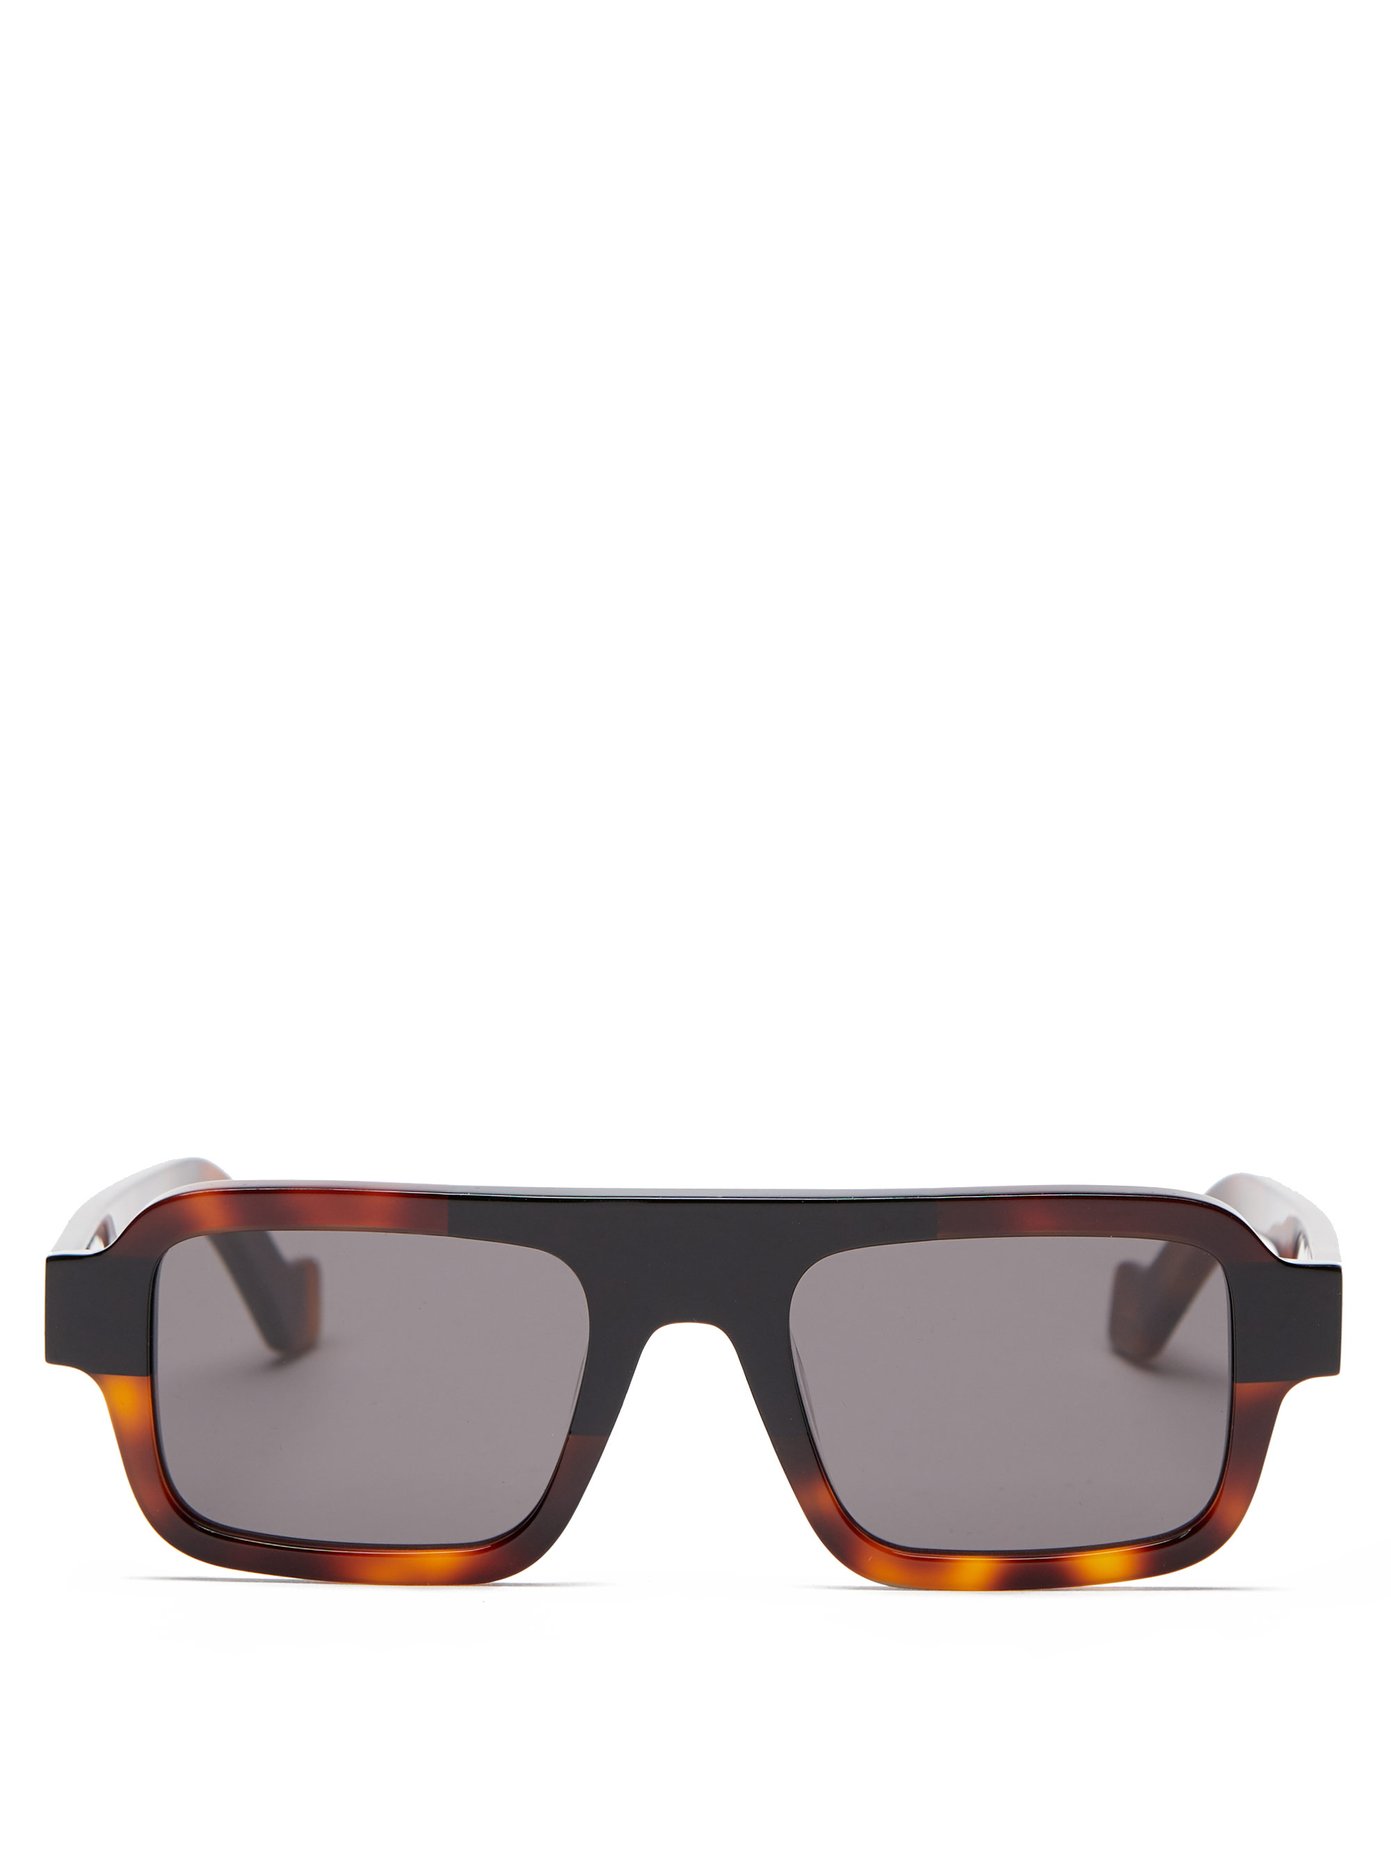 Square acetate sunglasses | Loewe 